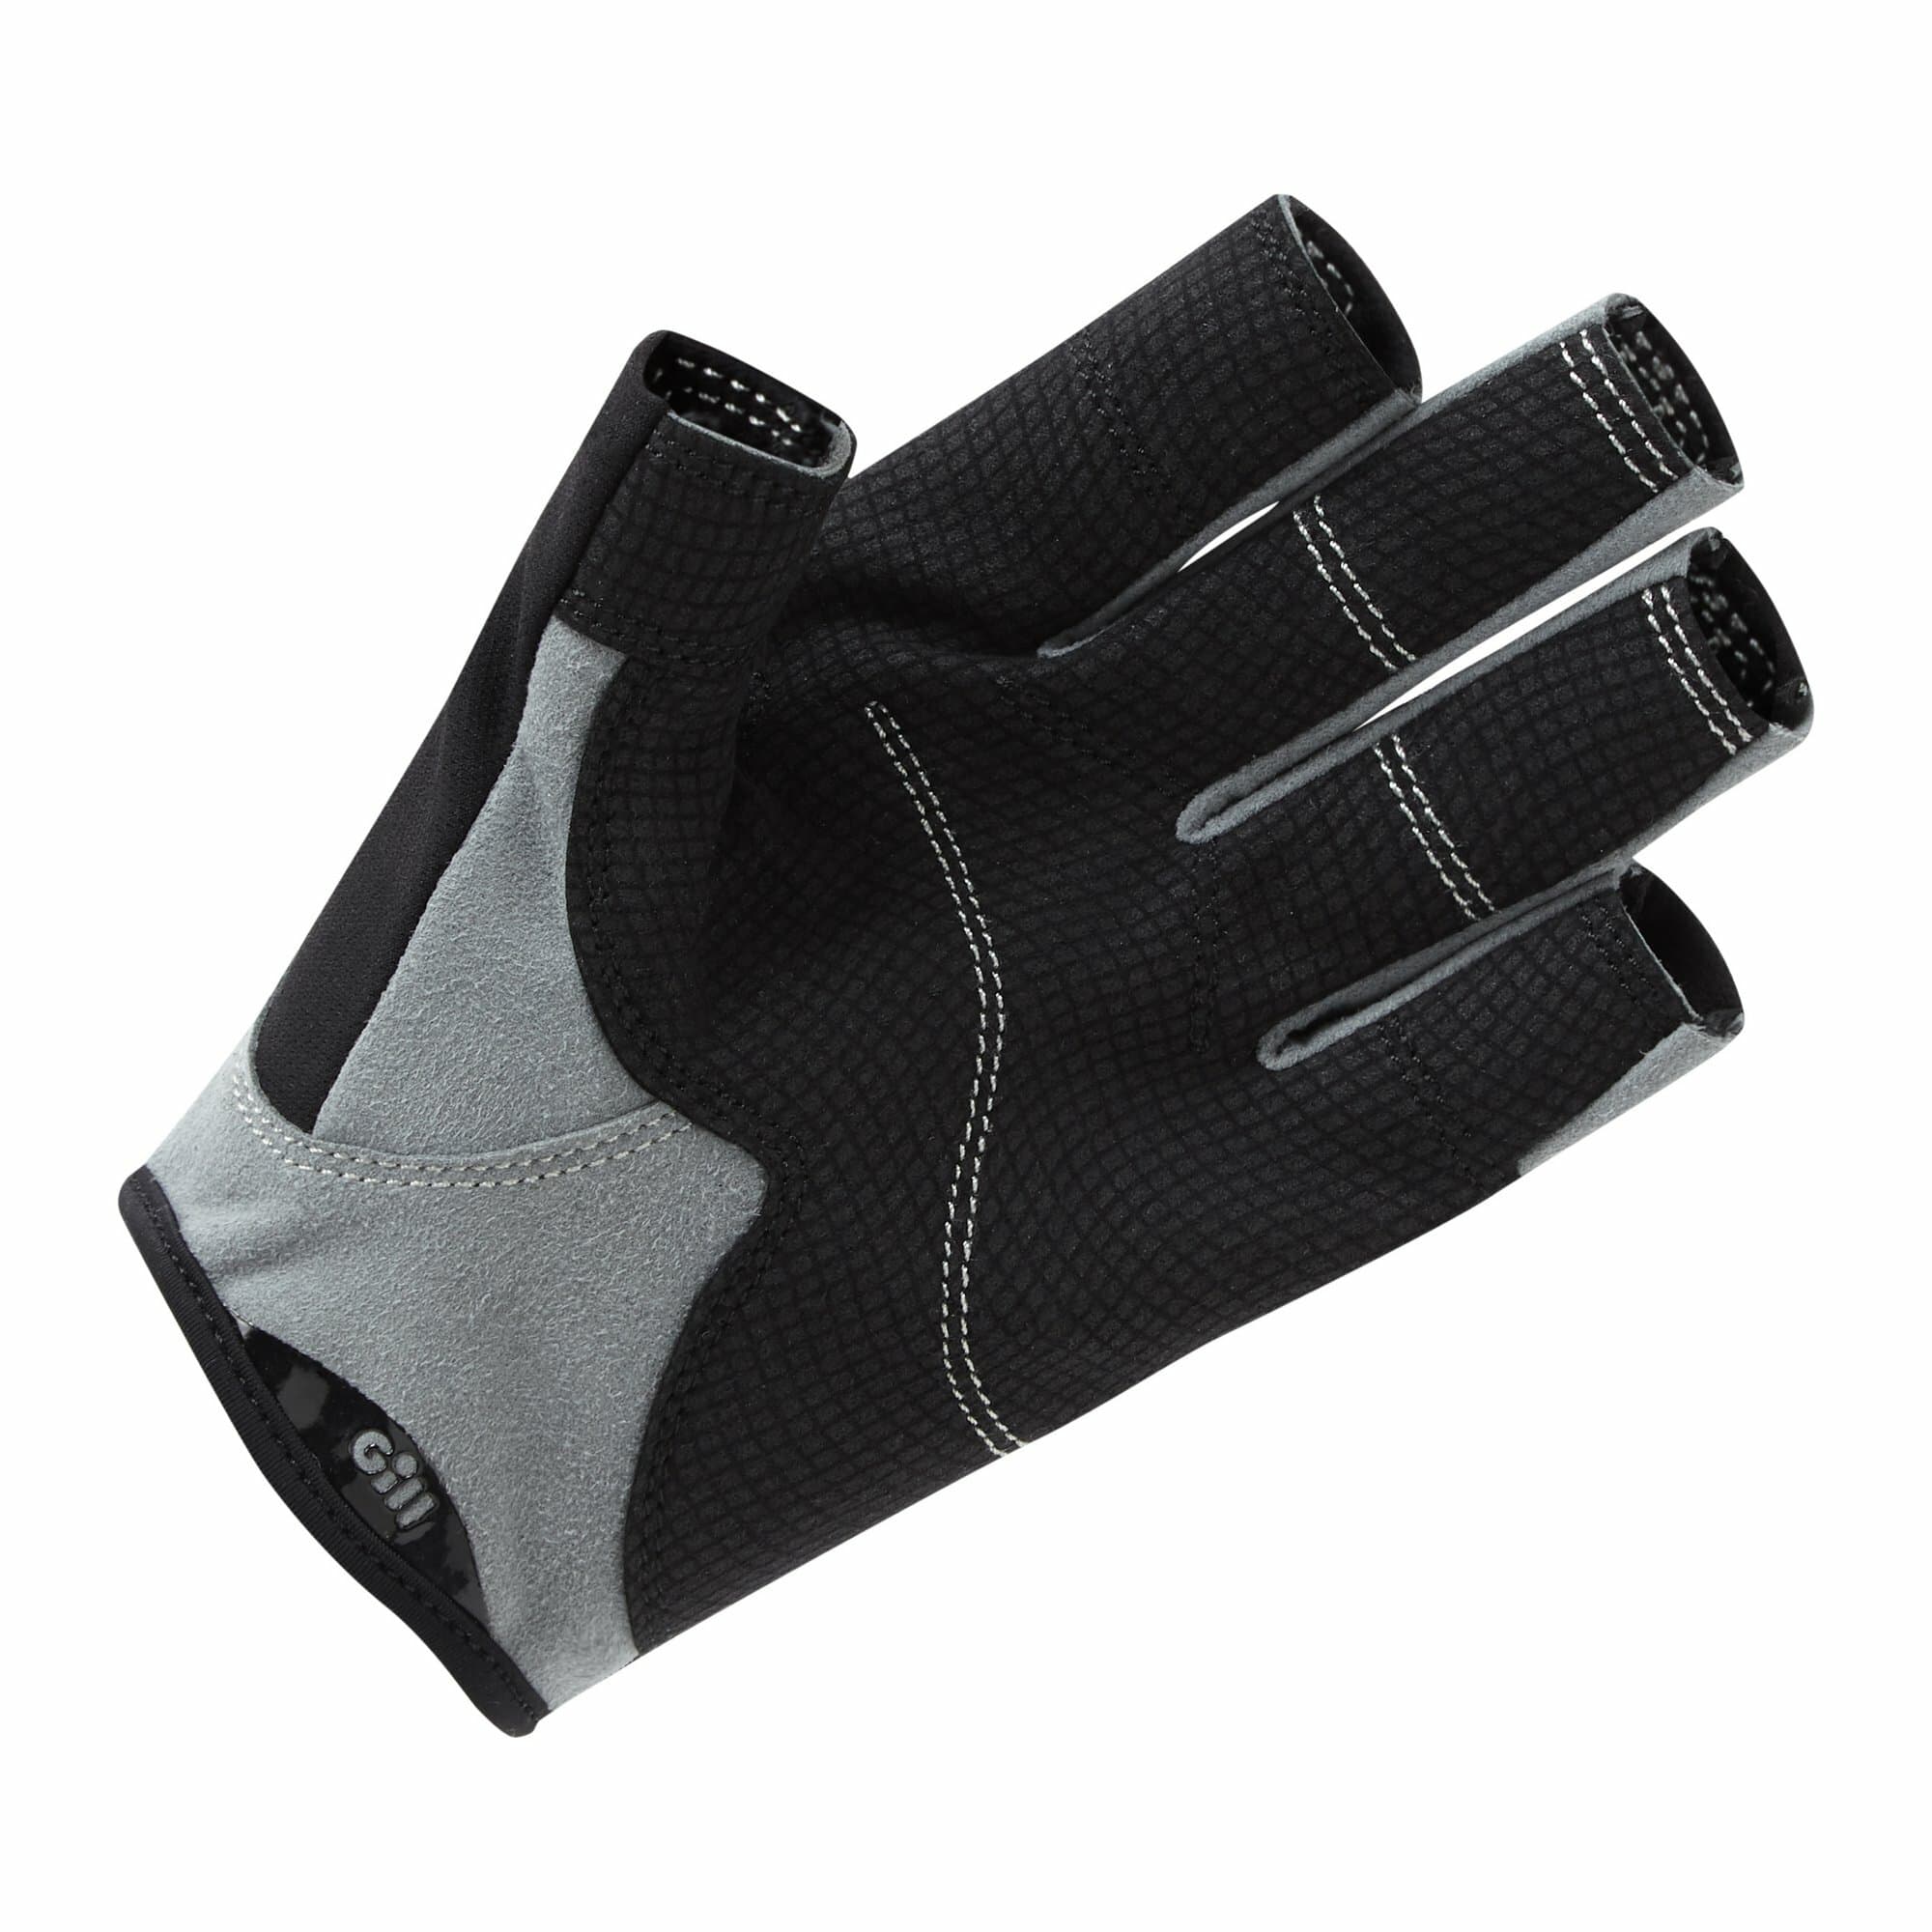 palm of Gill Deckhand Gloves - Short Finger